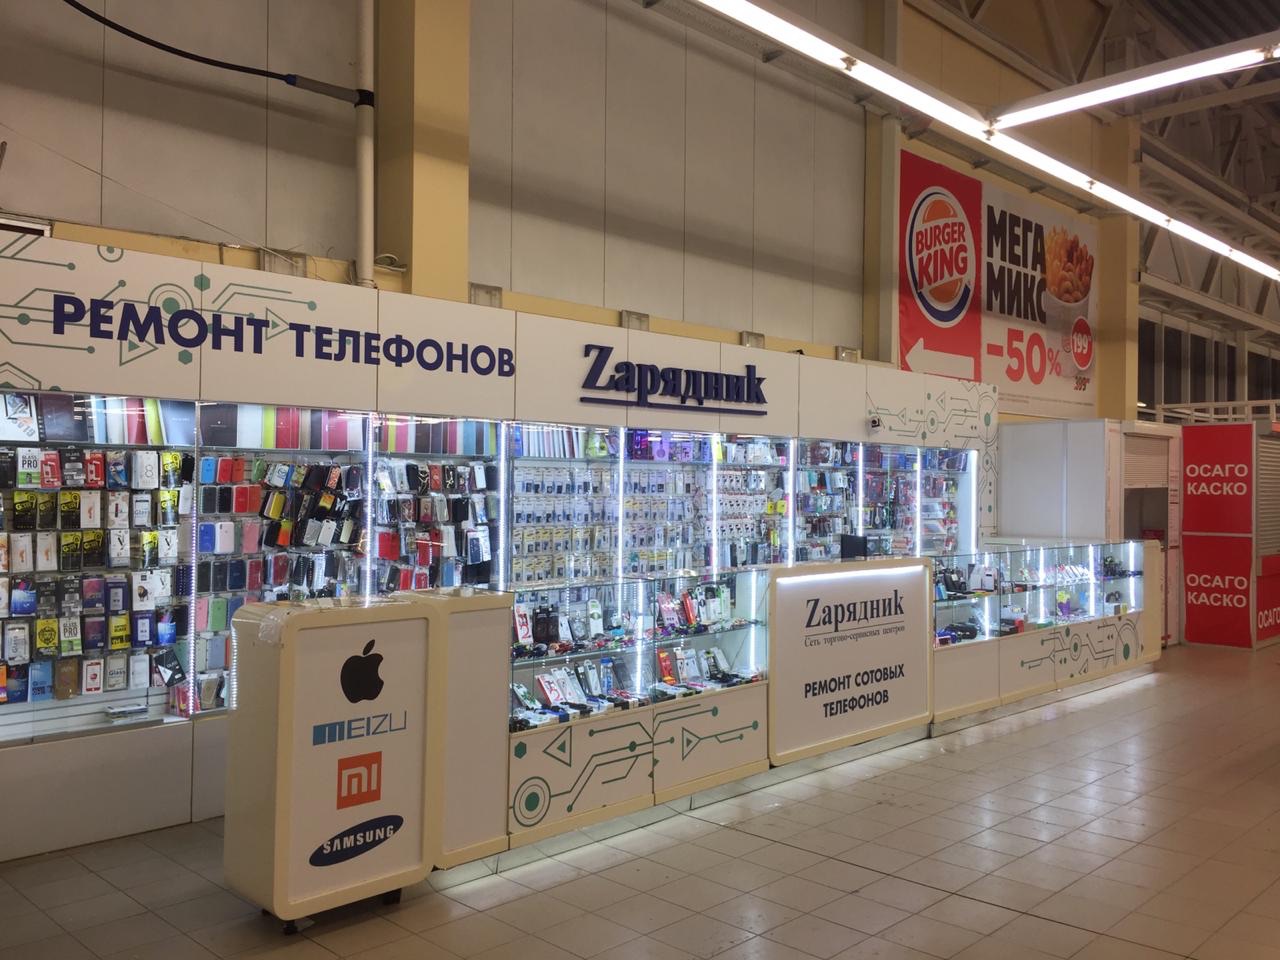 Мегамарт Сеть Магазинов Официальный Сайт Екатеринбург